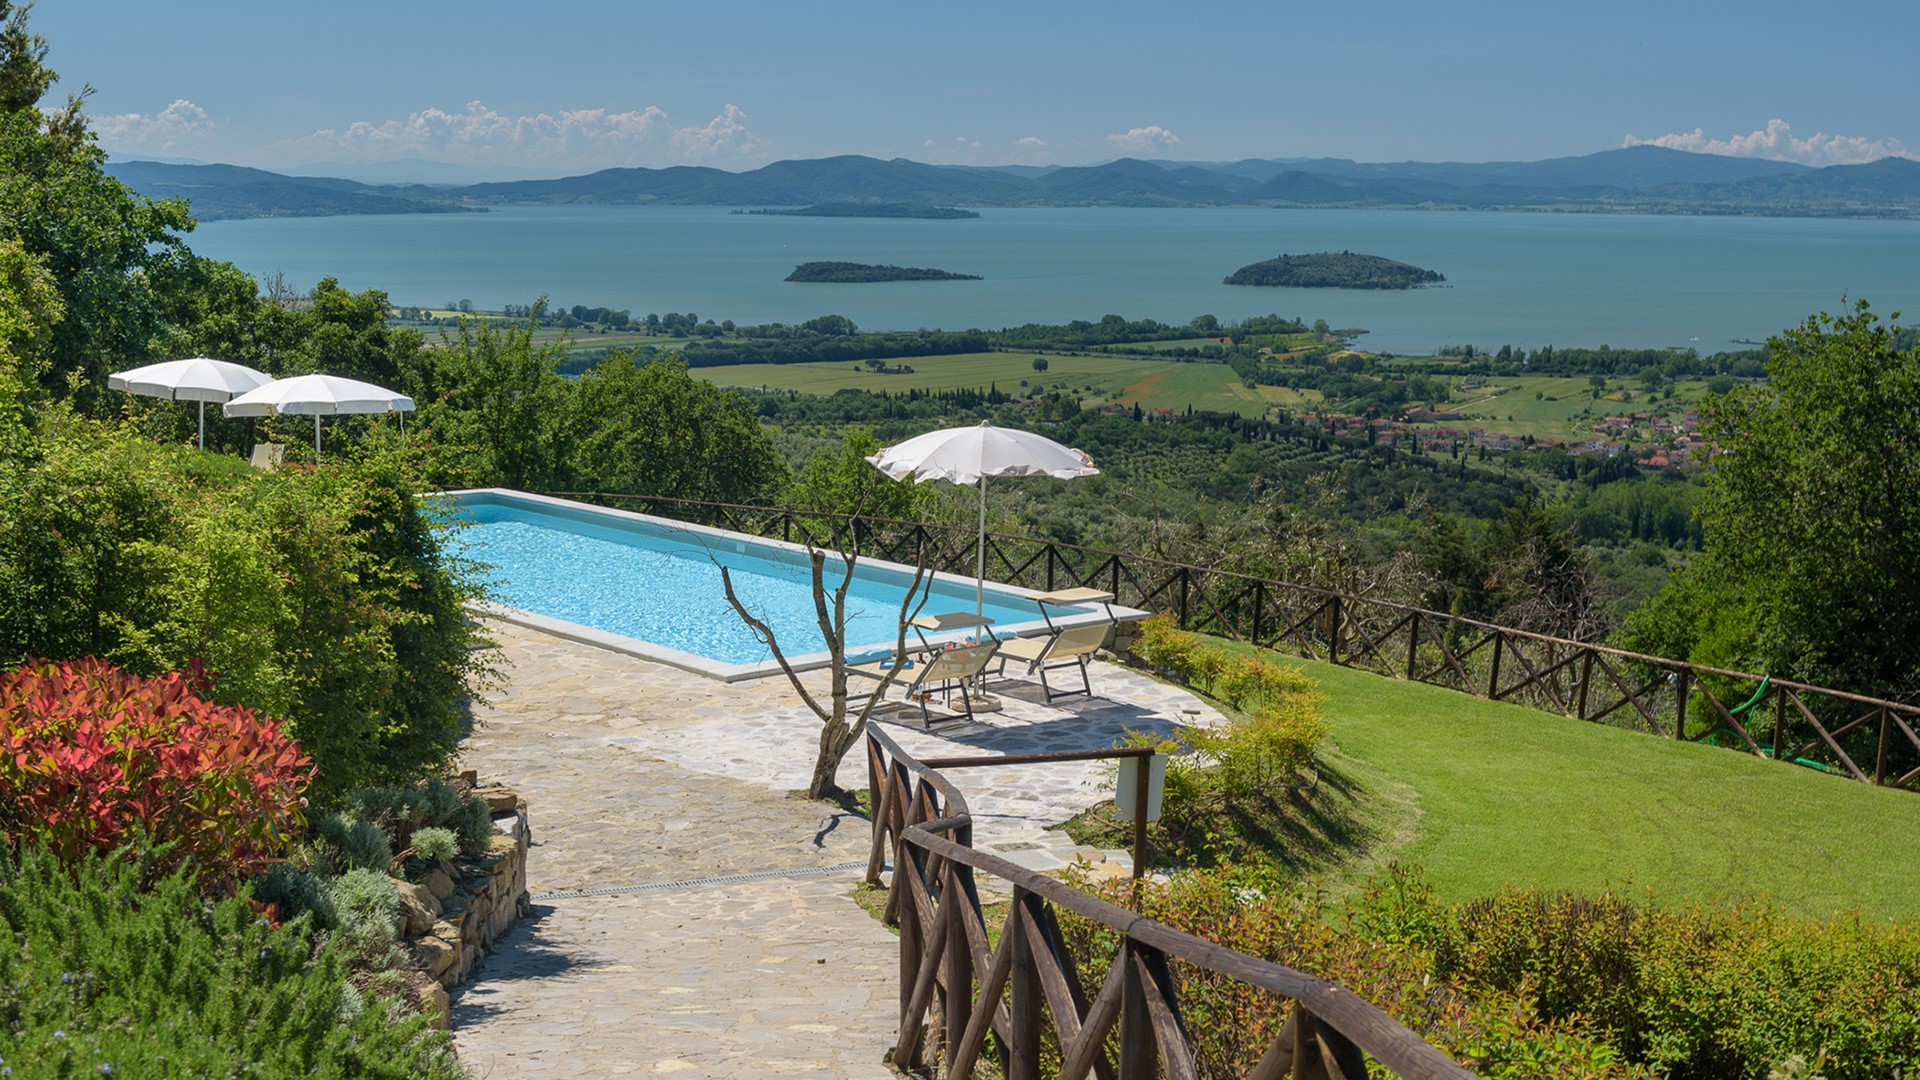 Umbria affitto villa con piscina Tuoro vacanze Lago Trasimeno relax campagna posizione mozzafiato